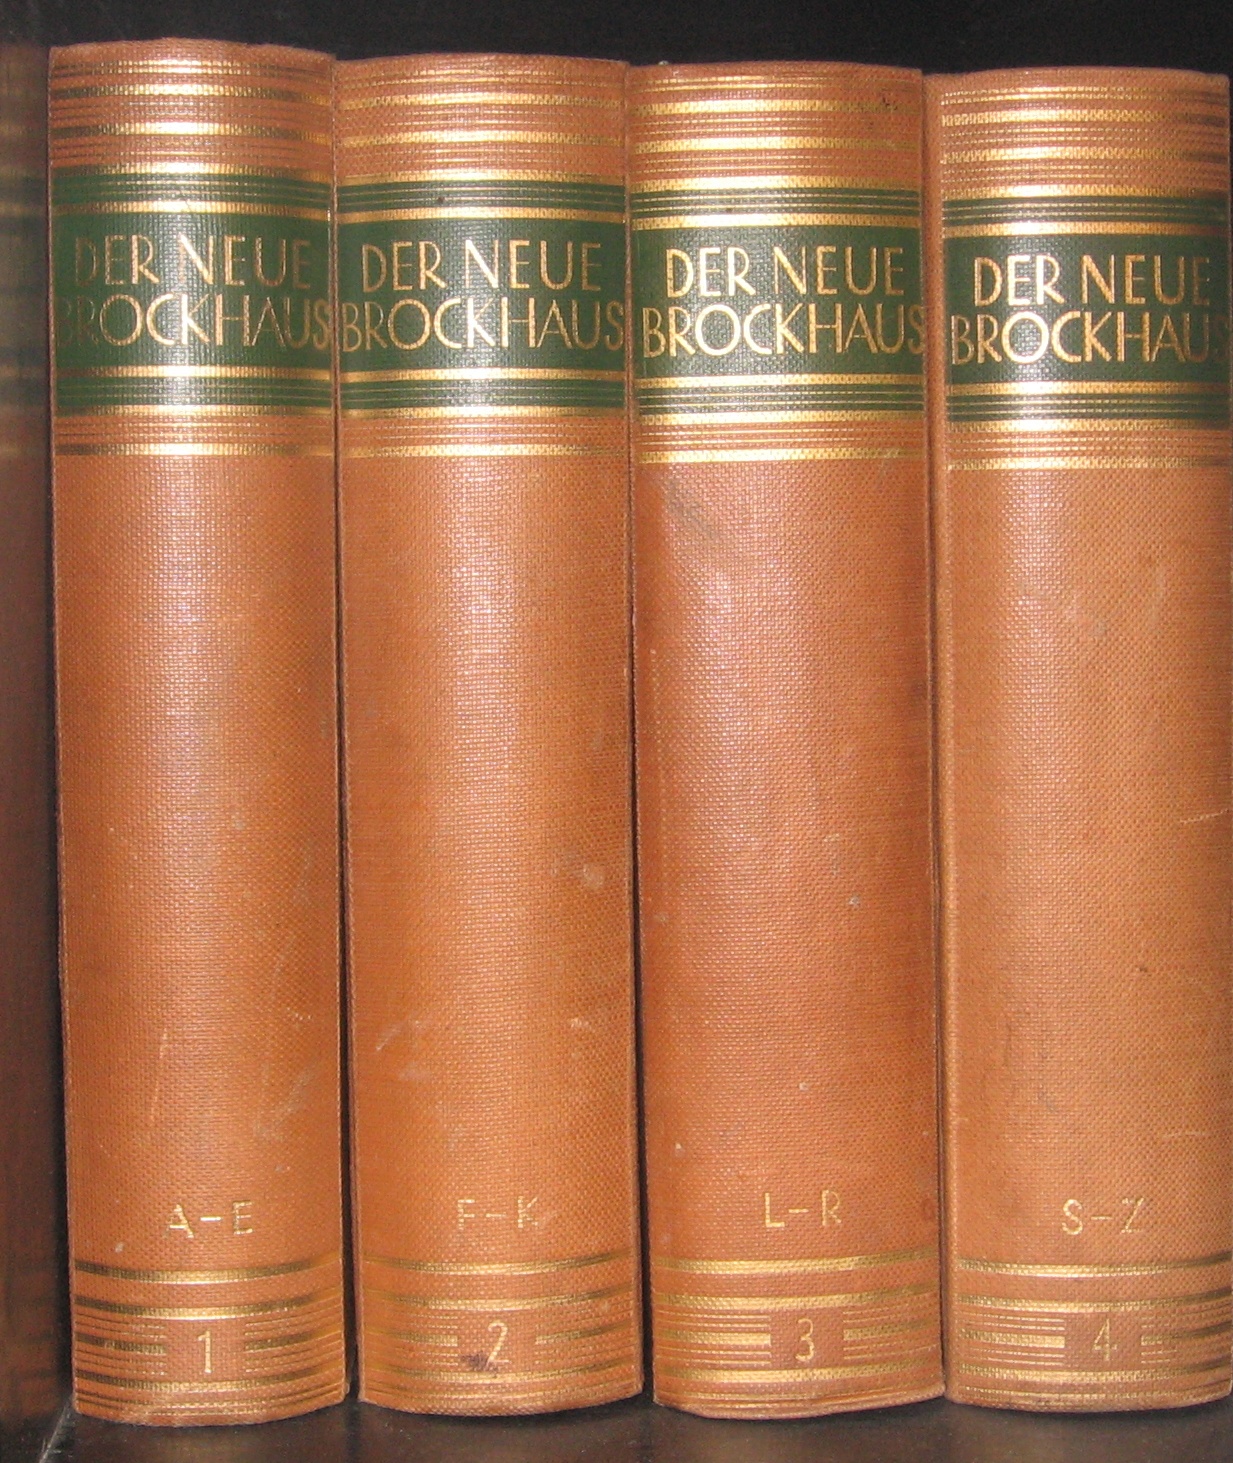 Auf dem Bild sieht man 4 Bücher des Lexikons Brockhaus